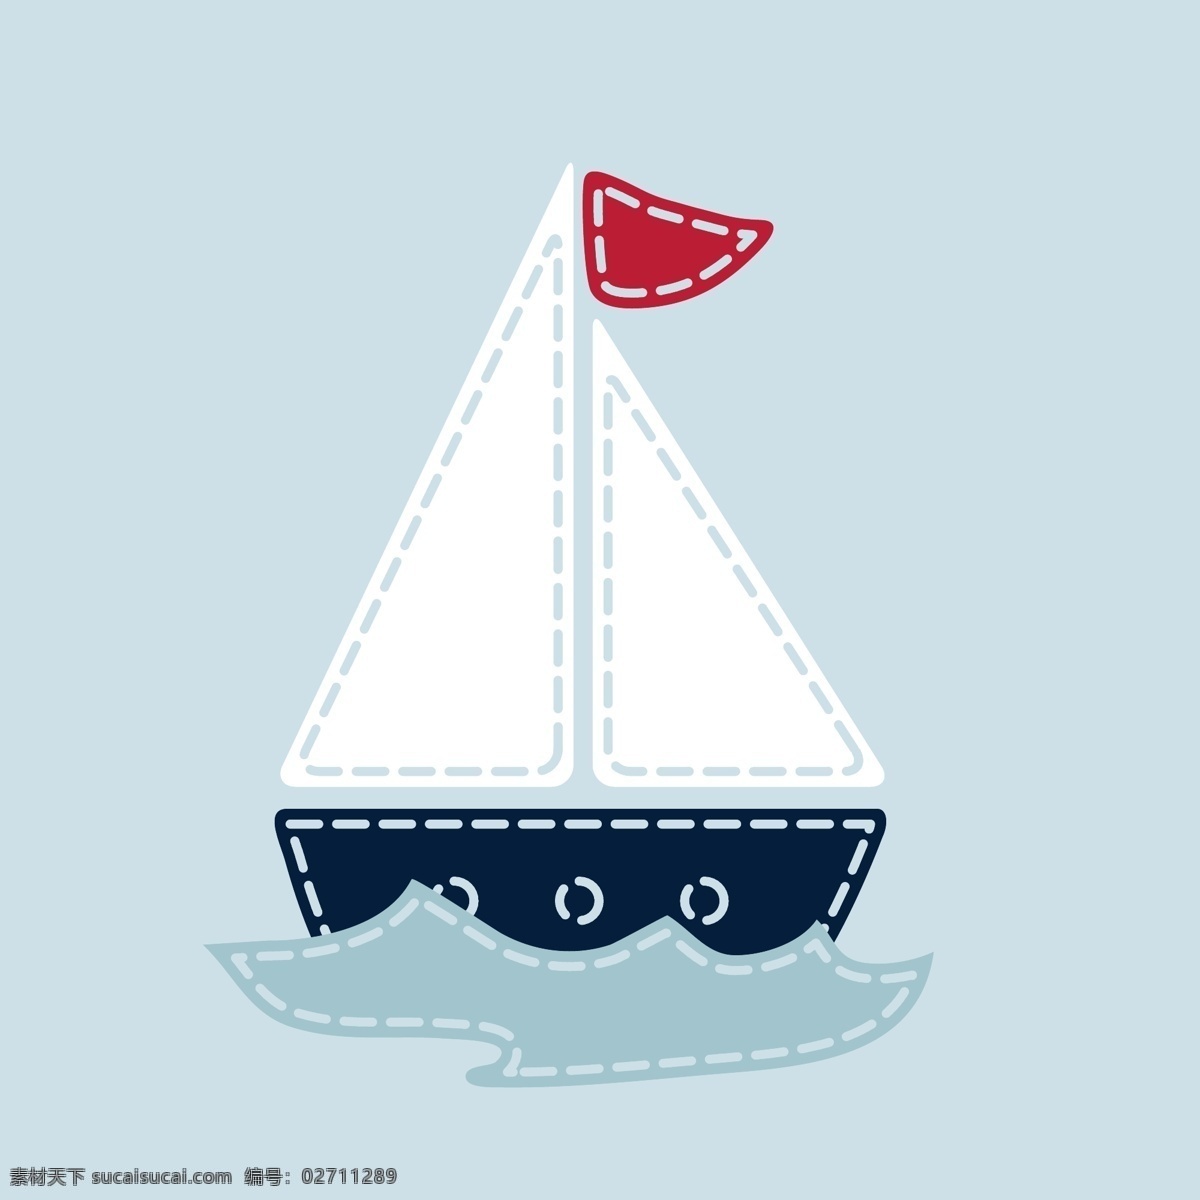 可爱卡通船 交通工具 船 卡通帆船 插画 印花 服装图案 矢量素材 白色